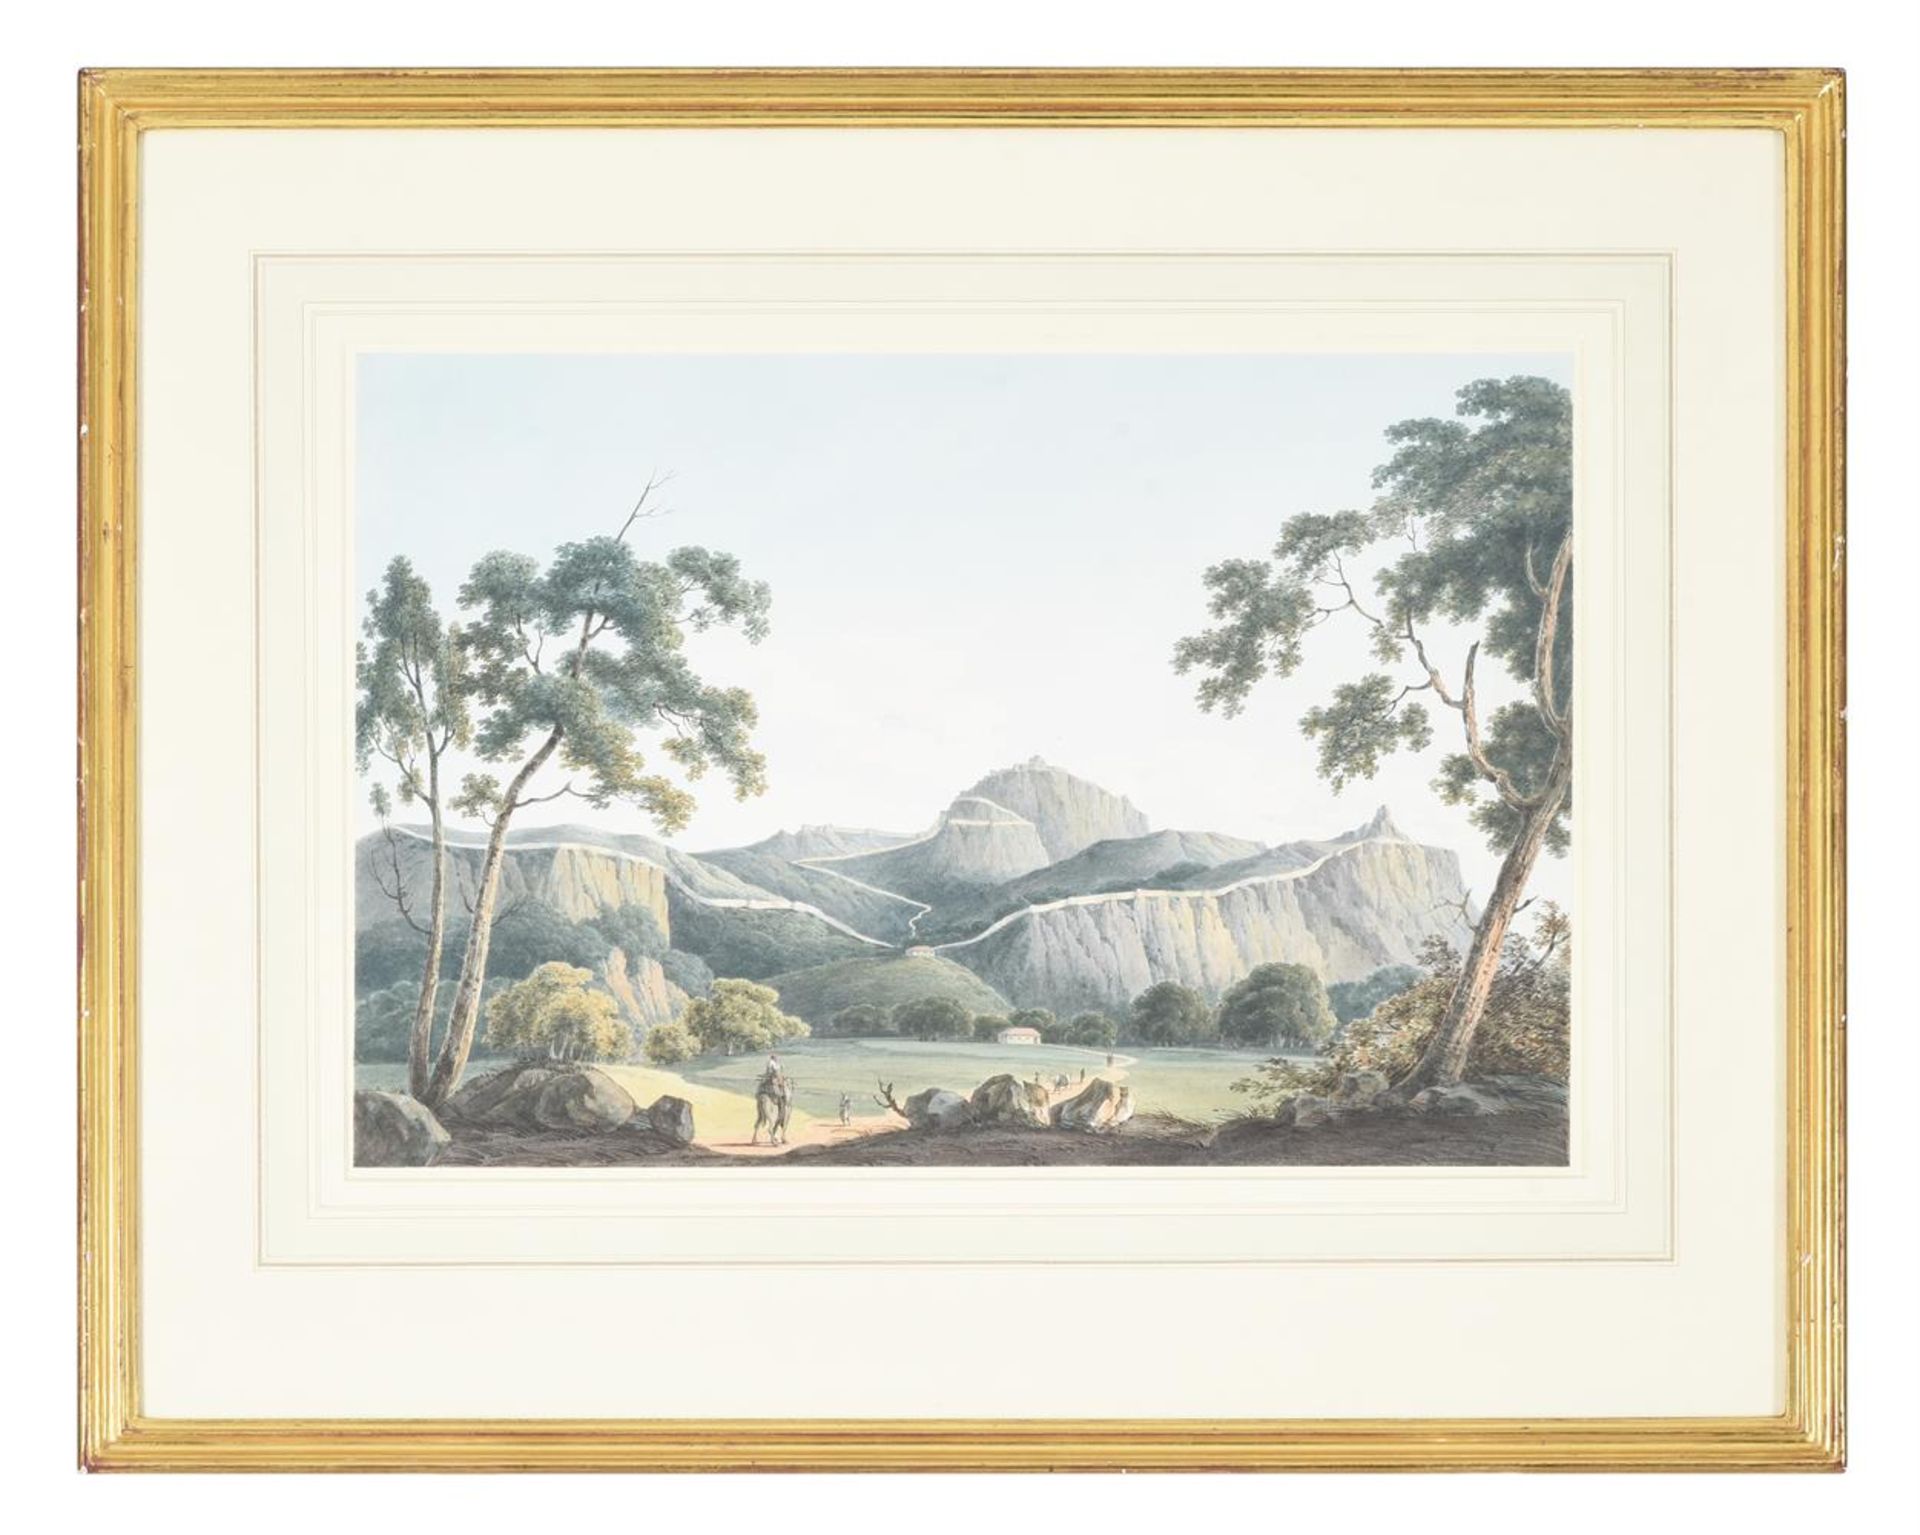 JUSTINIAN WALTER GANTZ (BRITISH 1802-1862), THE FORTRESS OF GOOTY, BURMA - Image 2 of 2